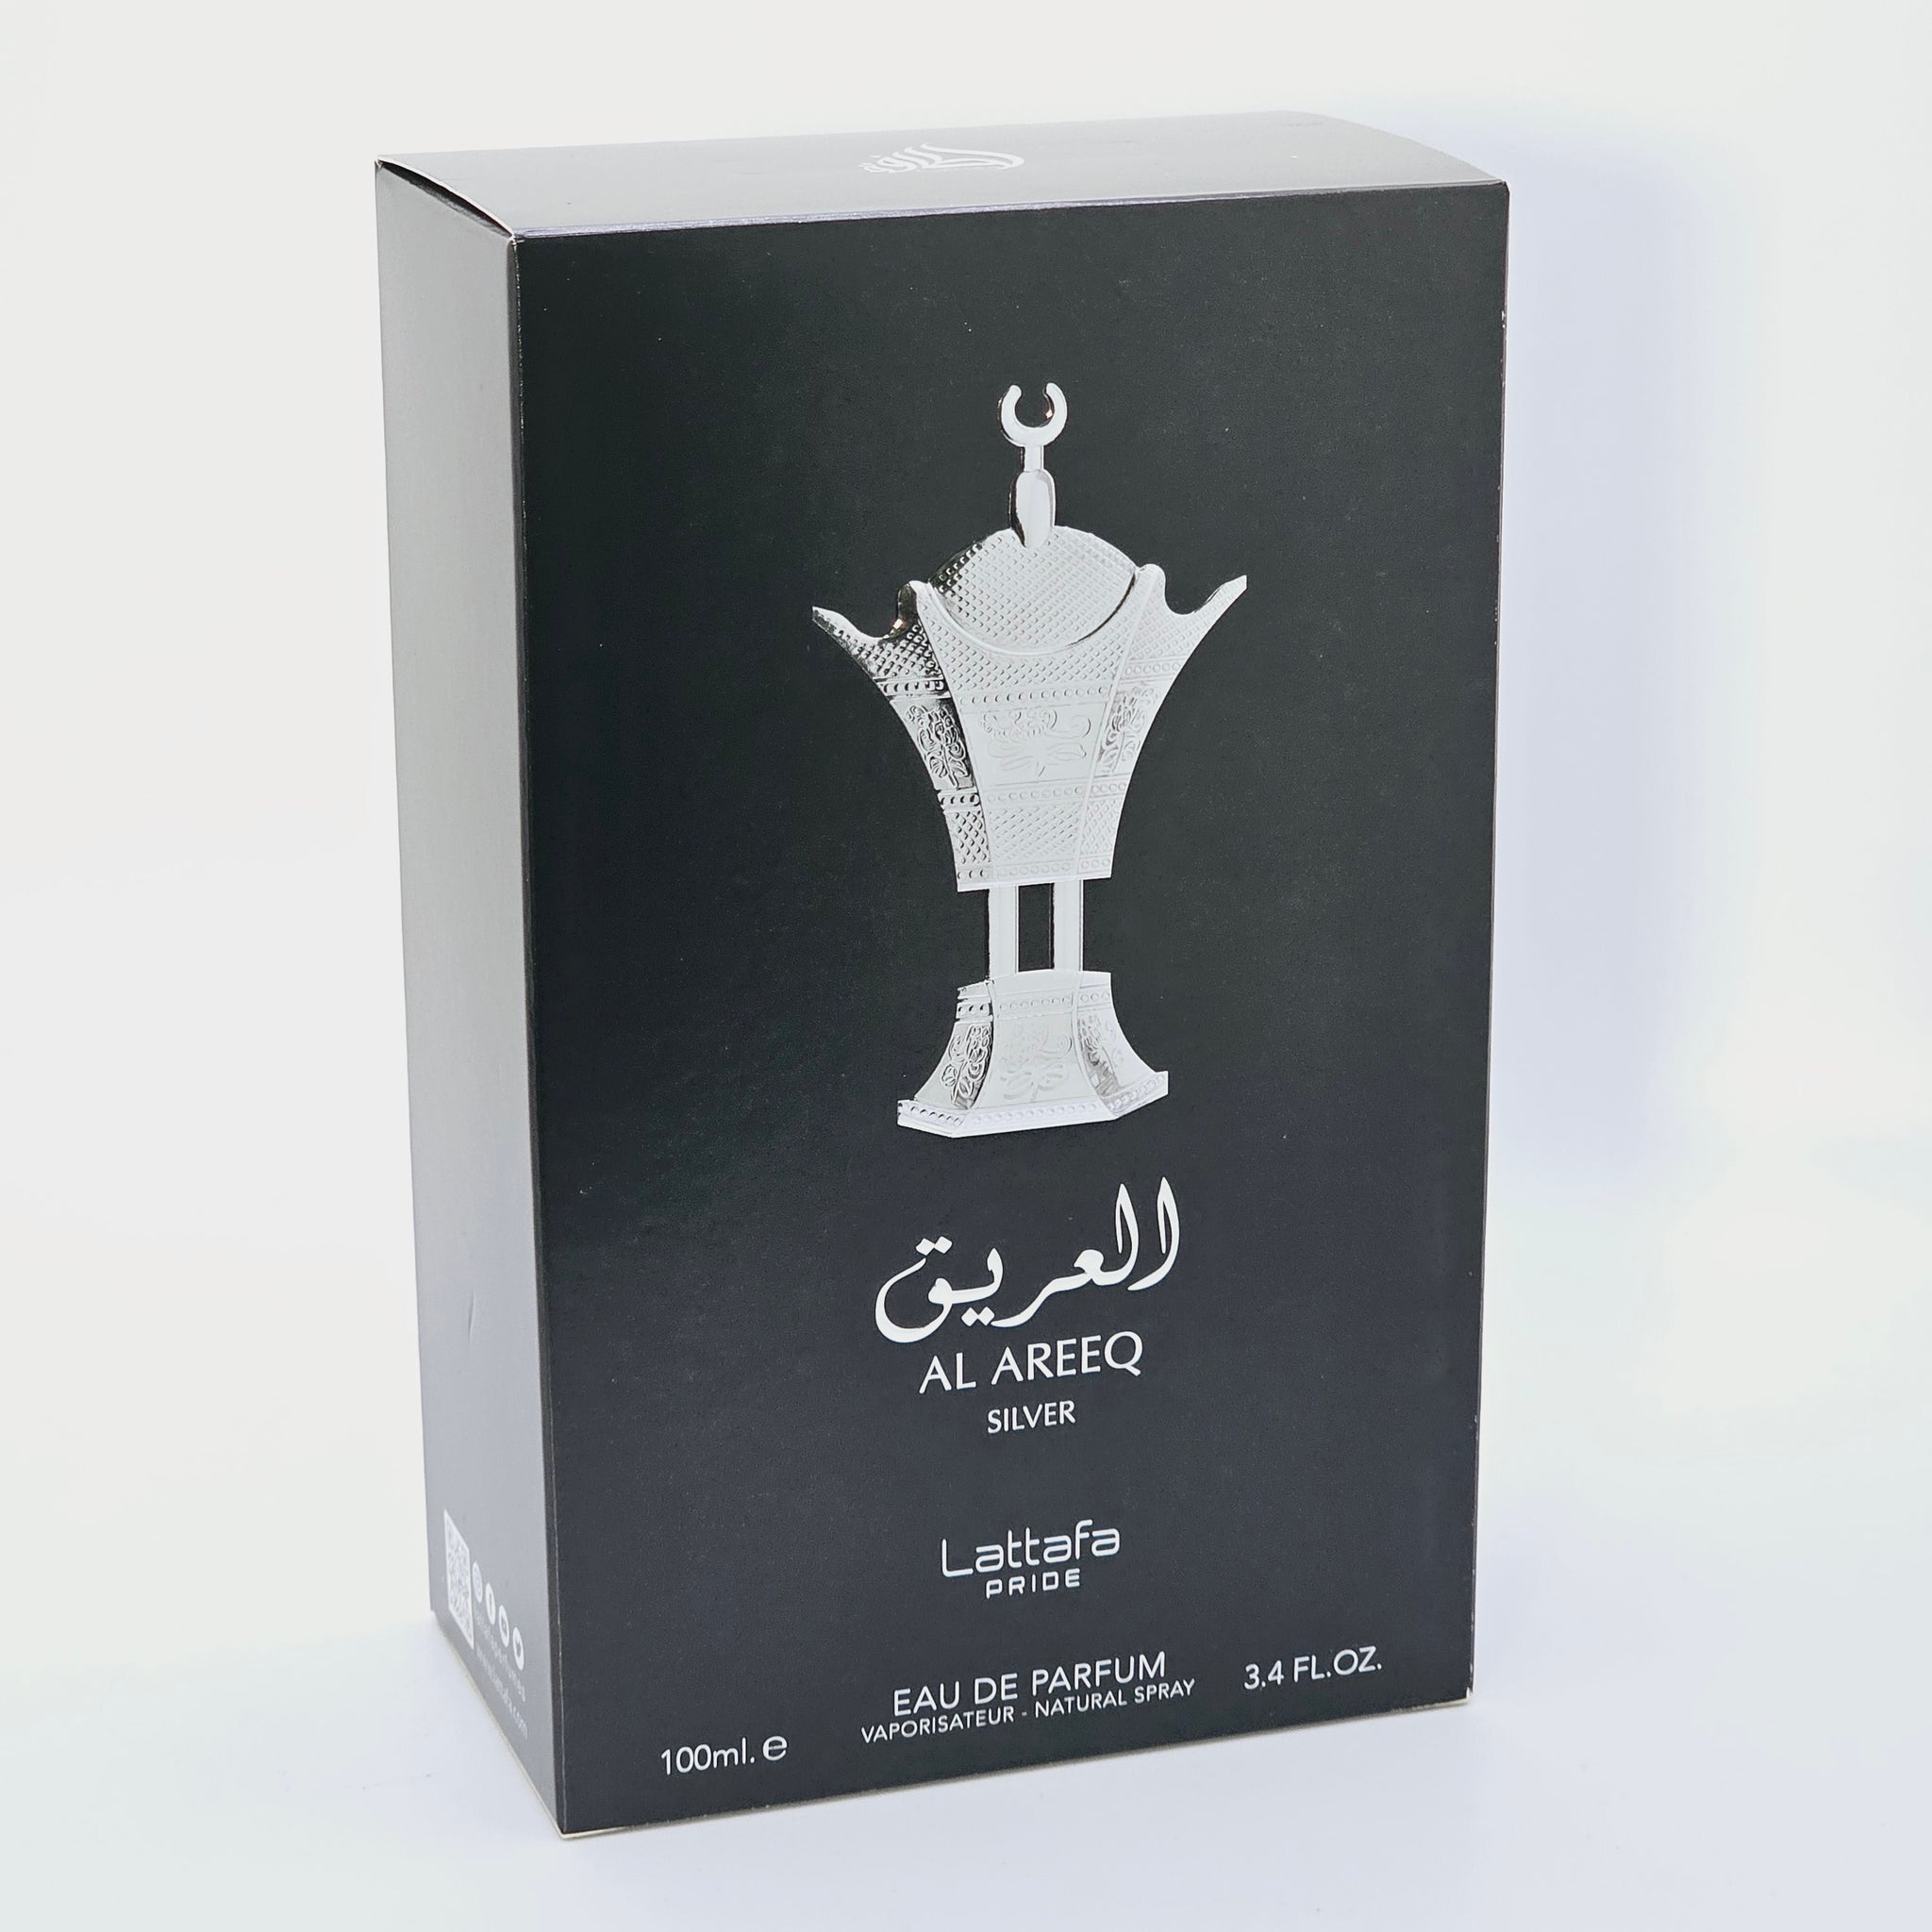 Al Areeq Silver by Lattafa - Unisex Eau De Parfum 3.4 Oz.